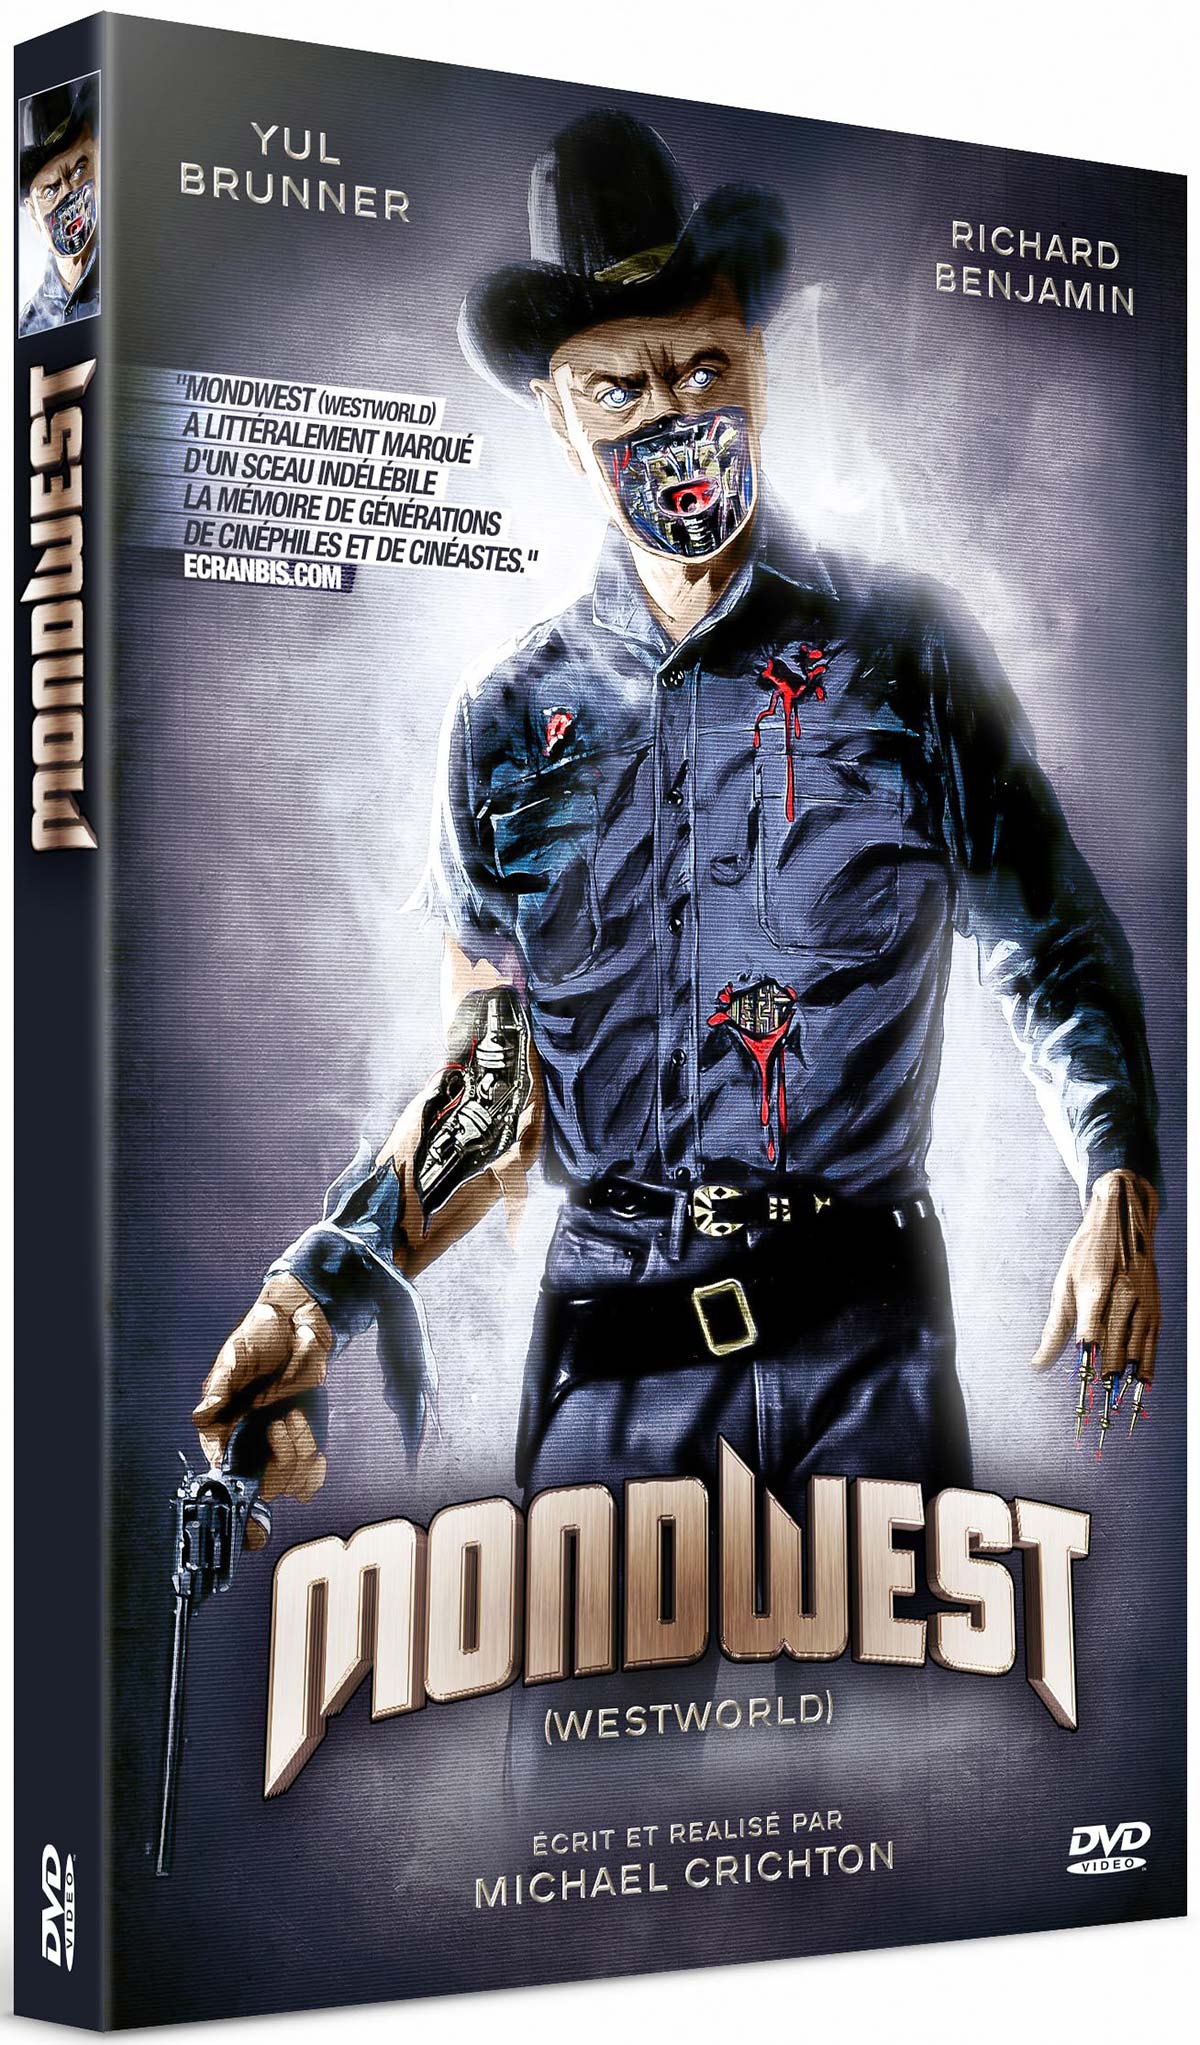 Mondwest (Westworld) - DVD